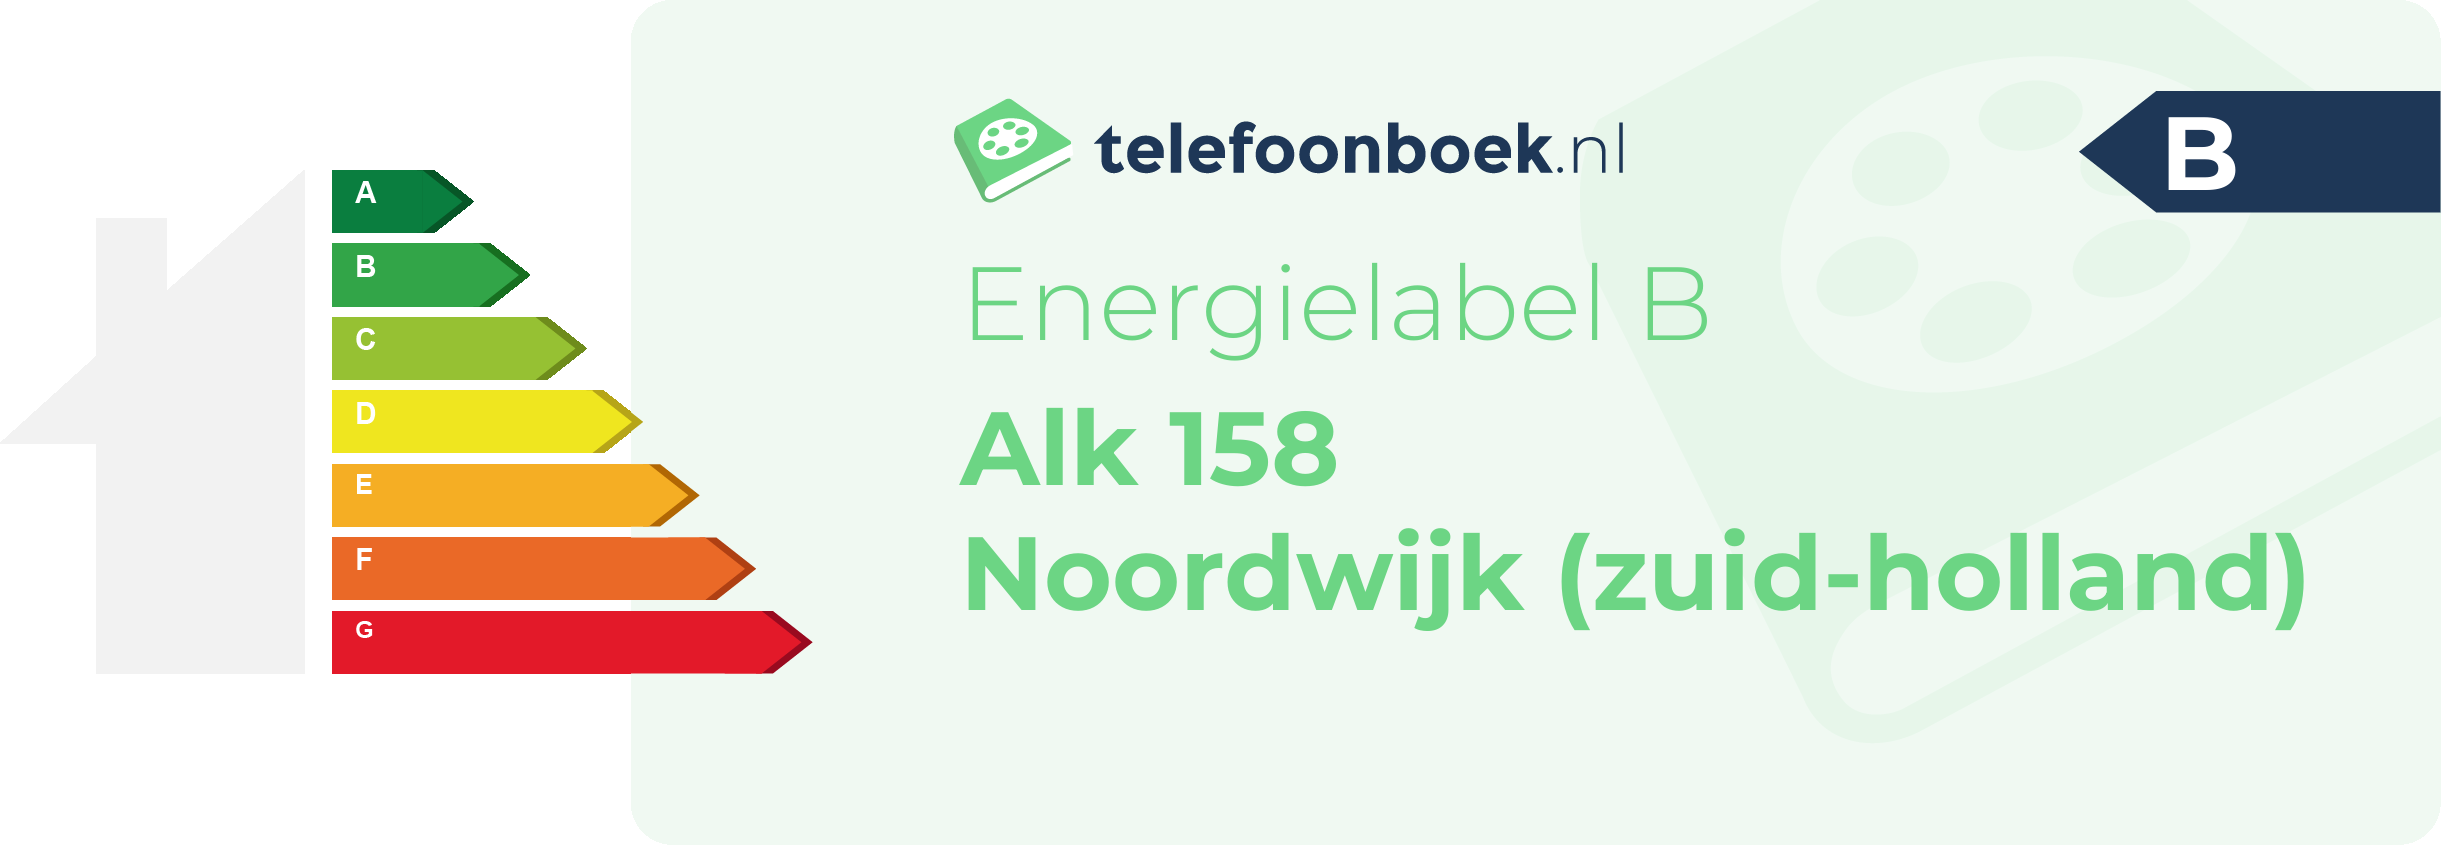 Energielabel Alk 158 Noordwijk (Zuid-Holland)